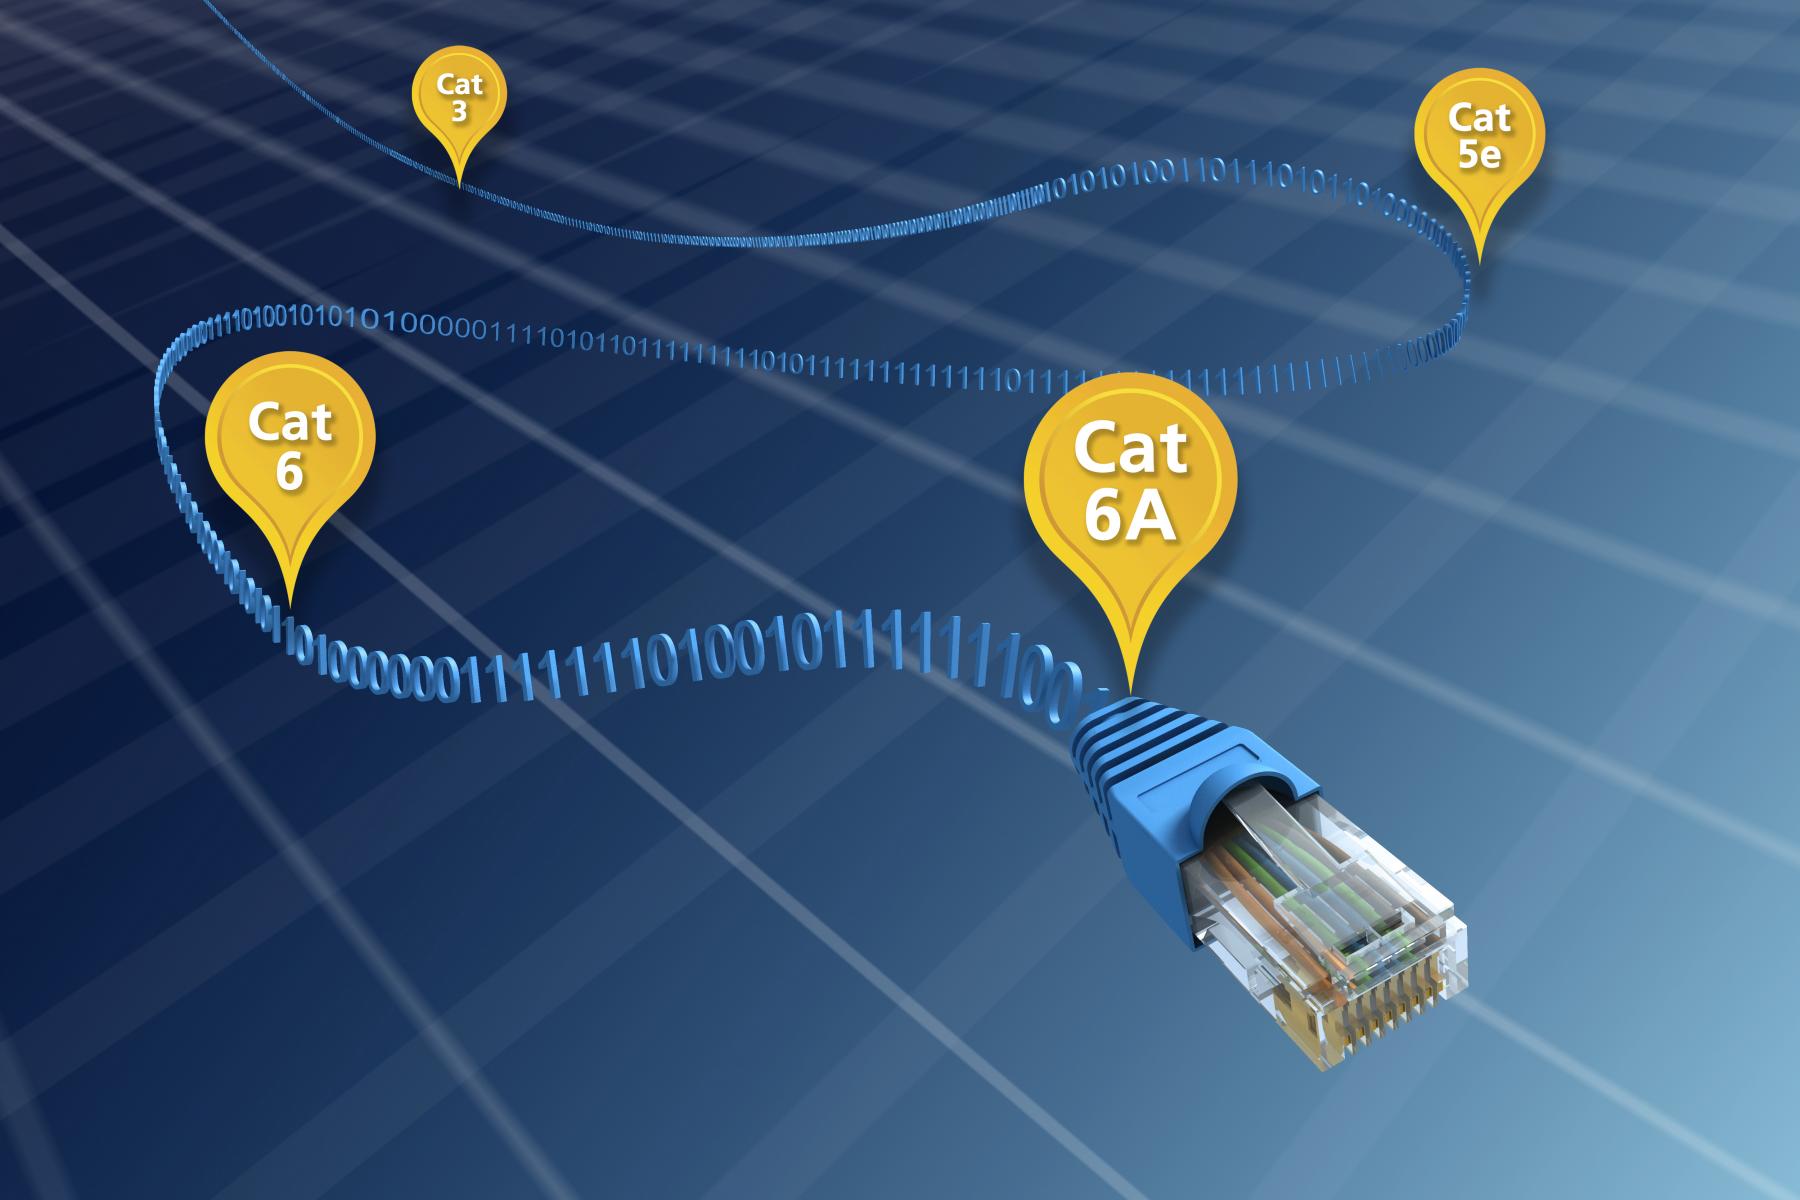 Un câble bleu marqué d’étiquettes jaunes illustre l’évolution du câble Ethernet de la Cat 3 à la Cat. 6A